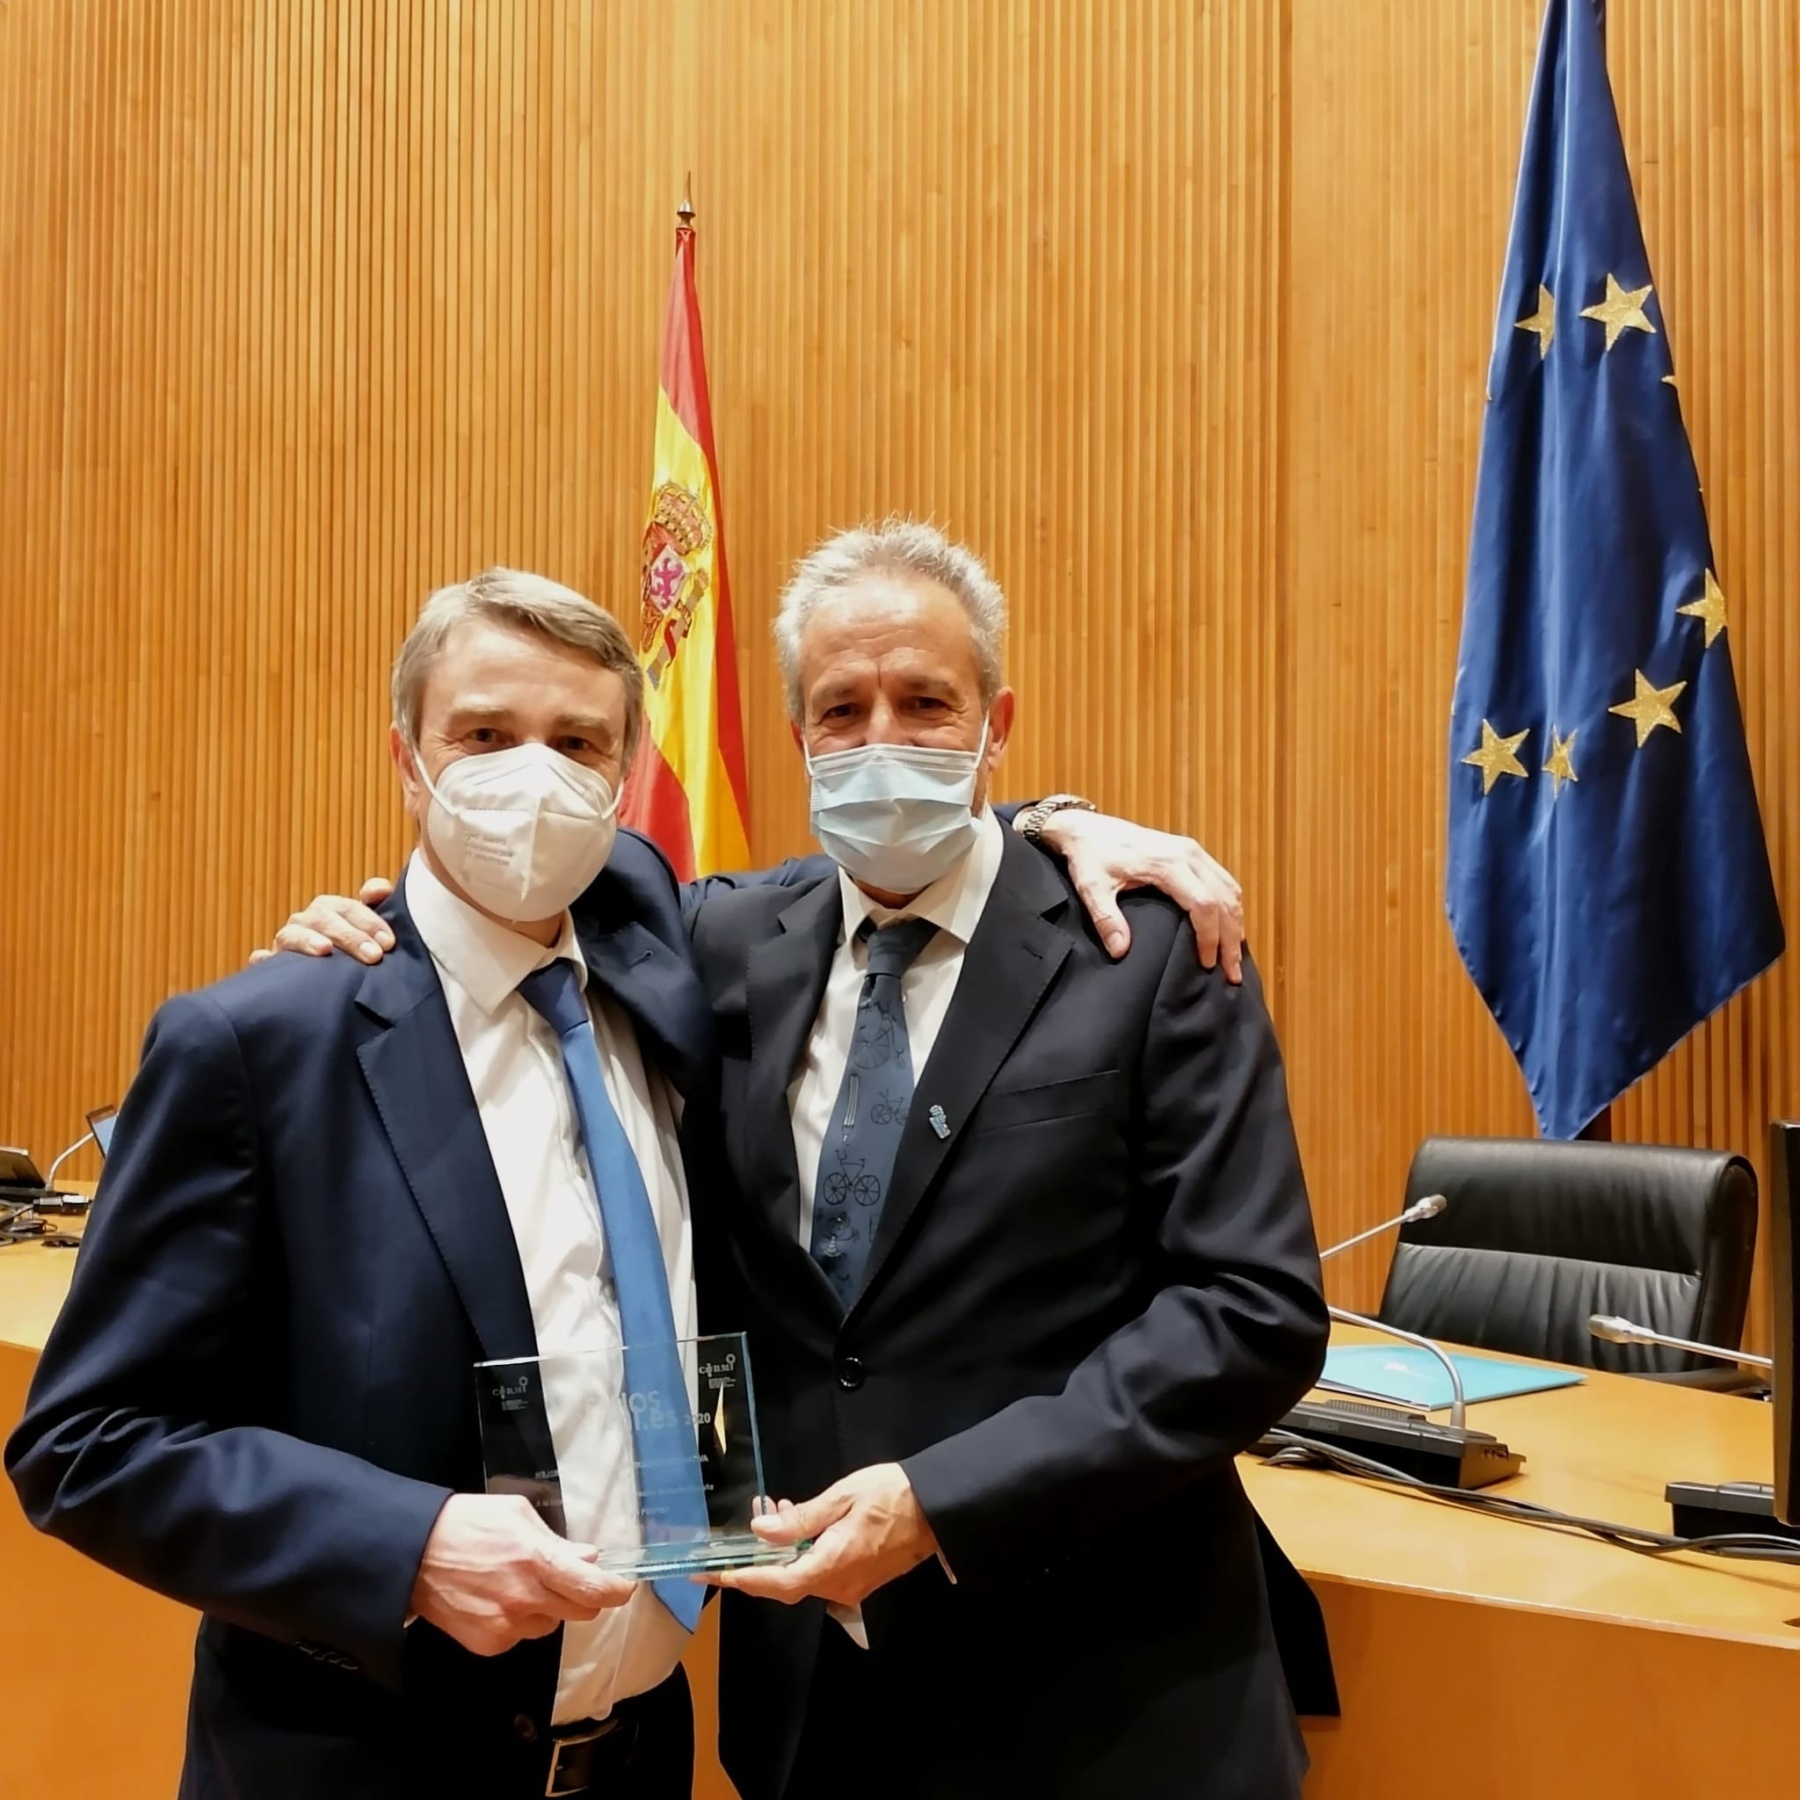 Pedro Ugarte Vera, presidente de la Federación Española de Autismo FESPAU y a Miguel Ángel de Casas, presidente de la Confederación Autismo España sujetando el premio.